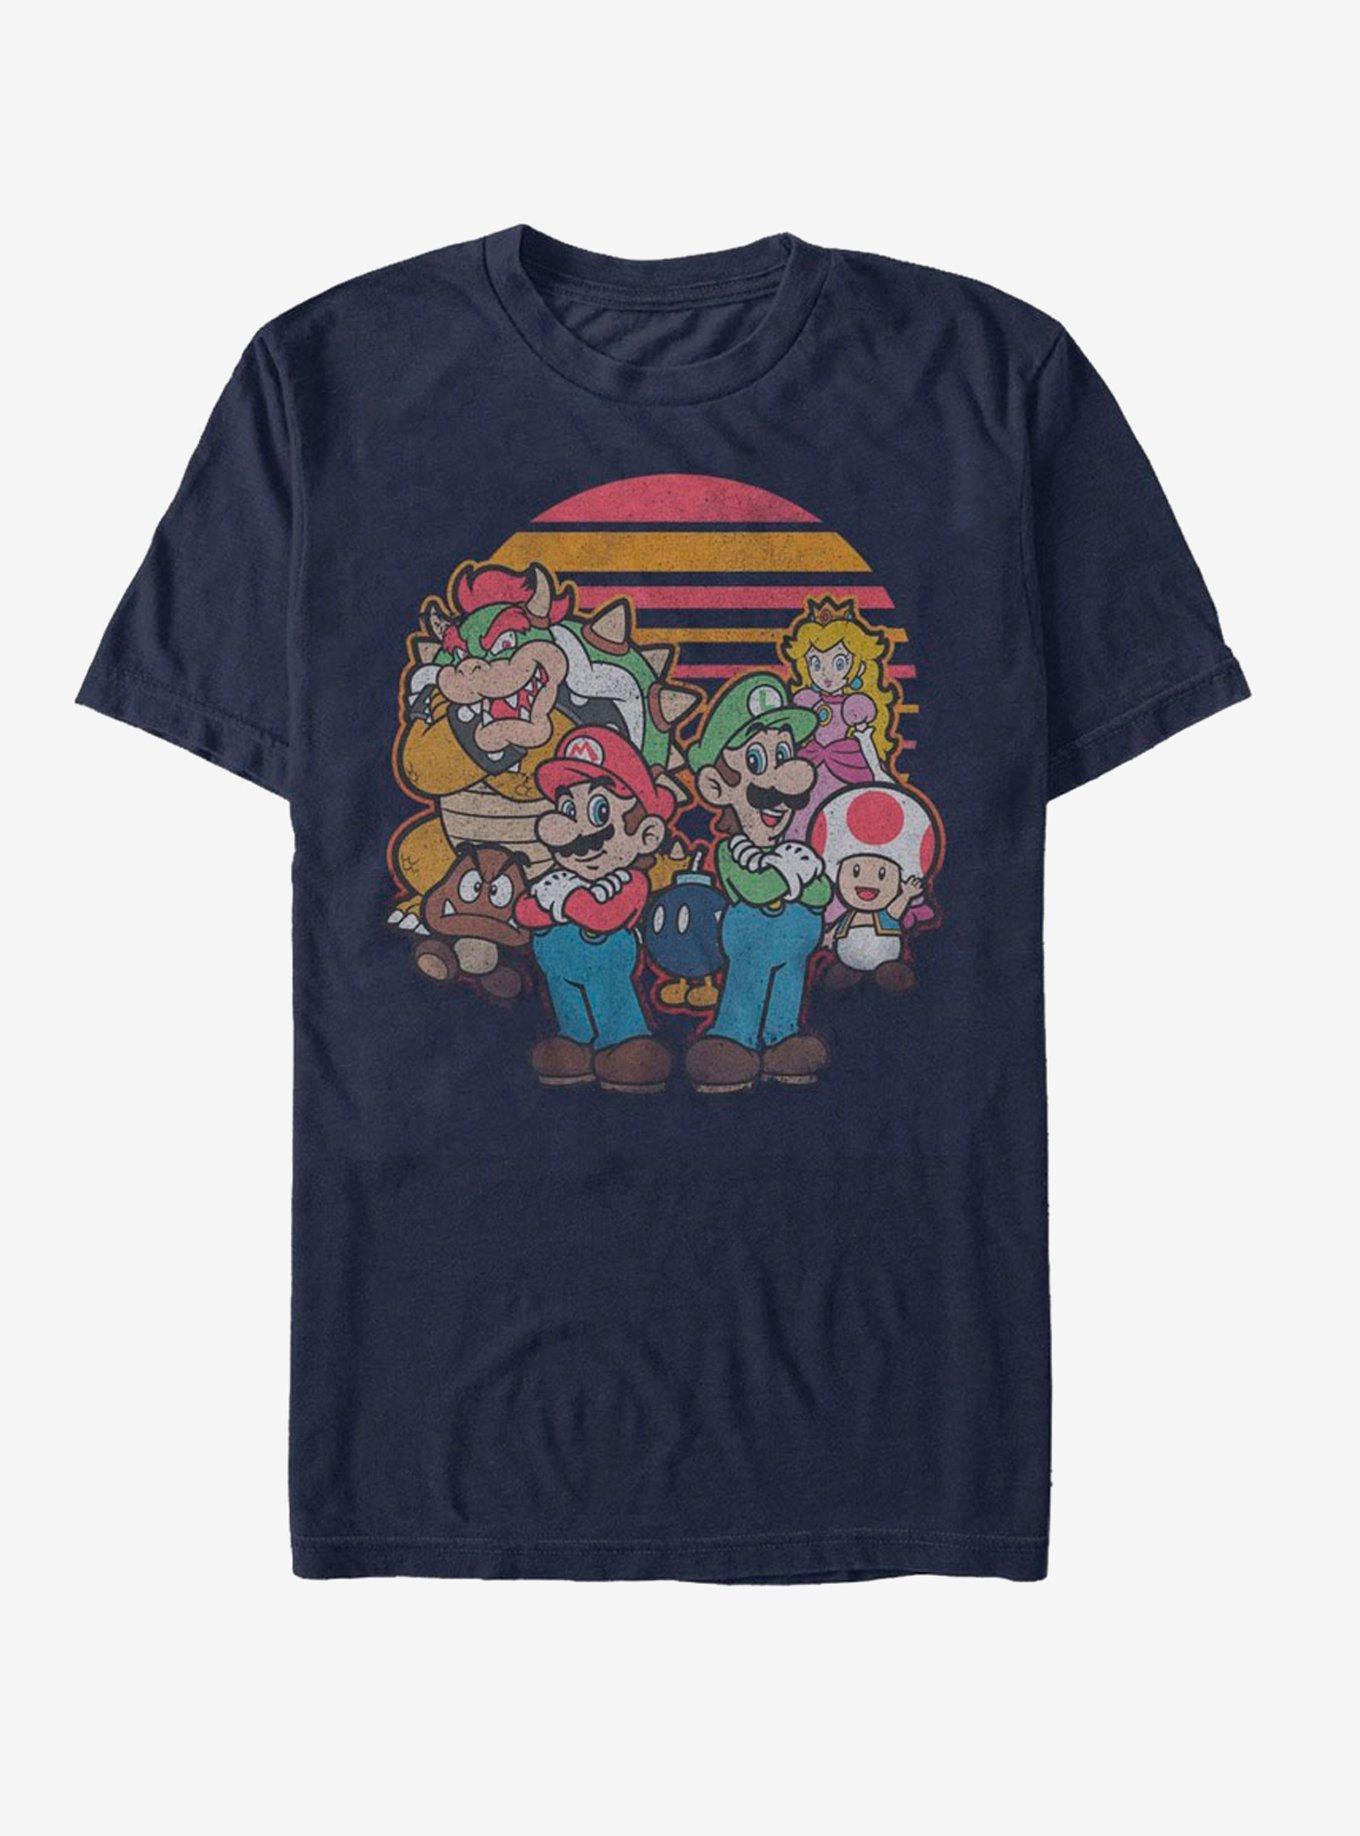 Nintendo Super Mario Retro Friends T-Shirt